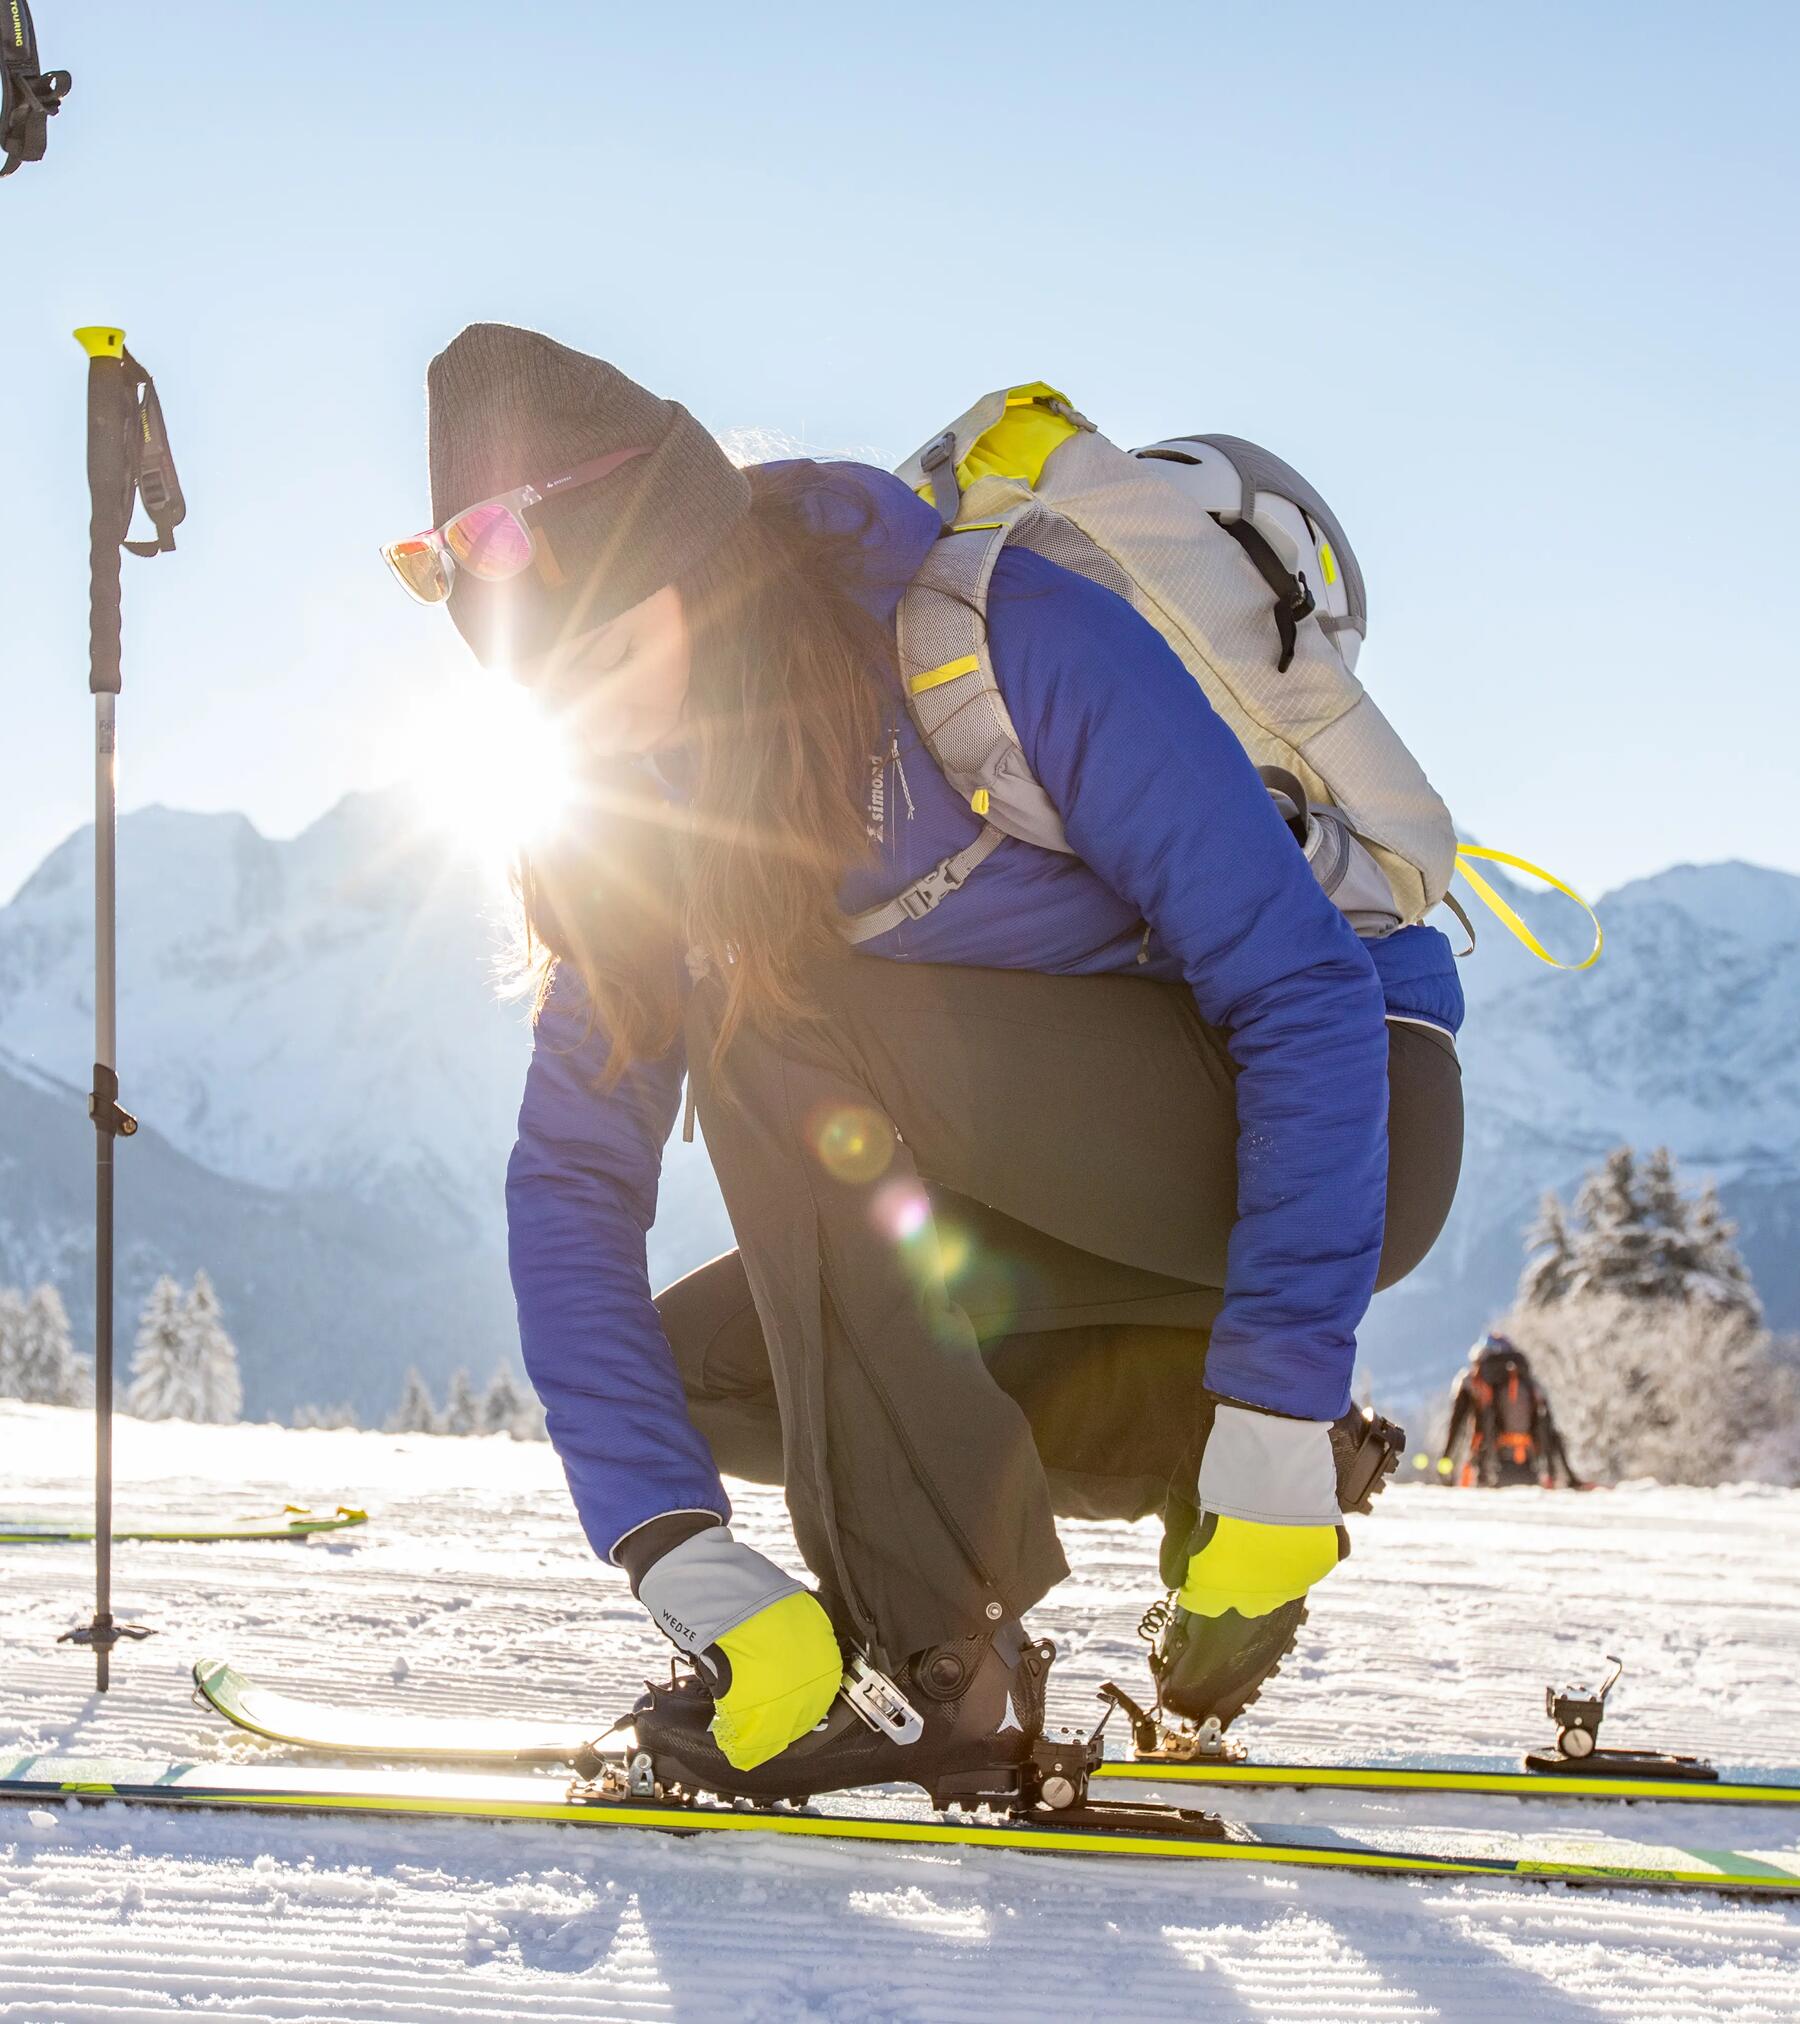 Comment choisir ses fixations de ski de randonnée